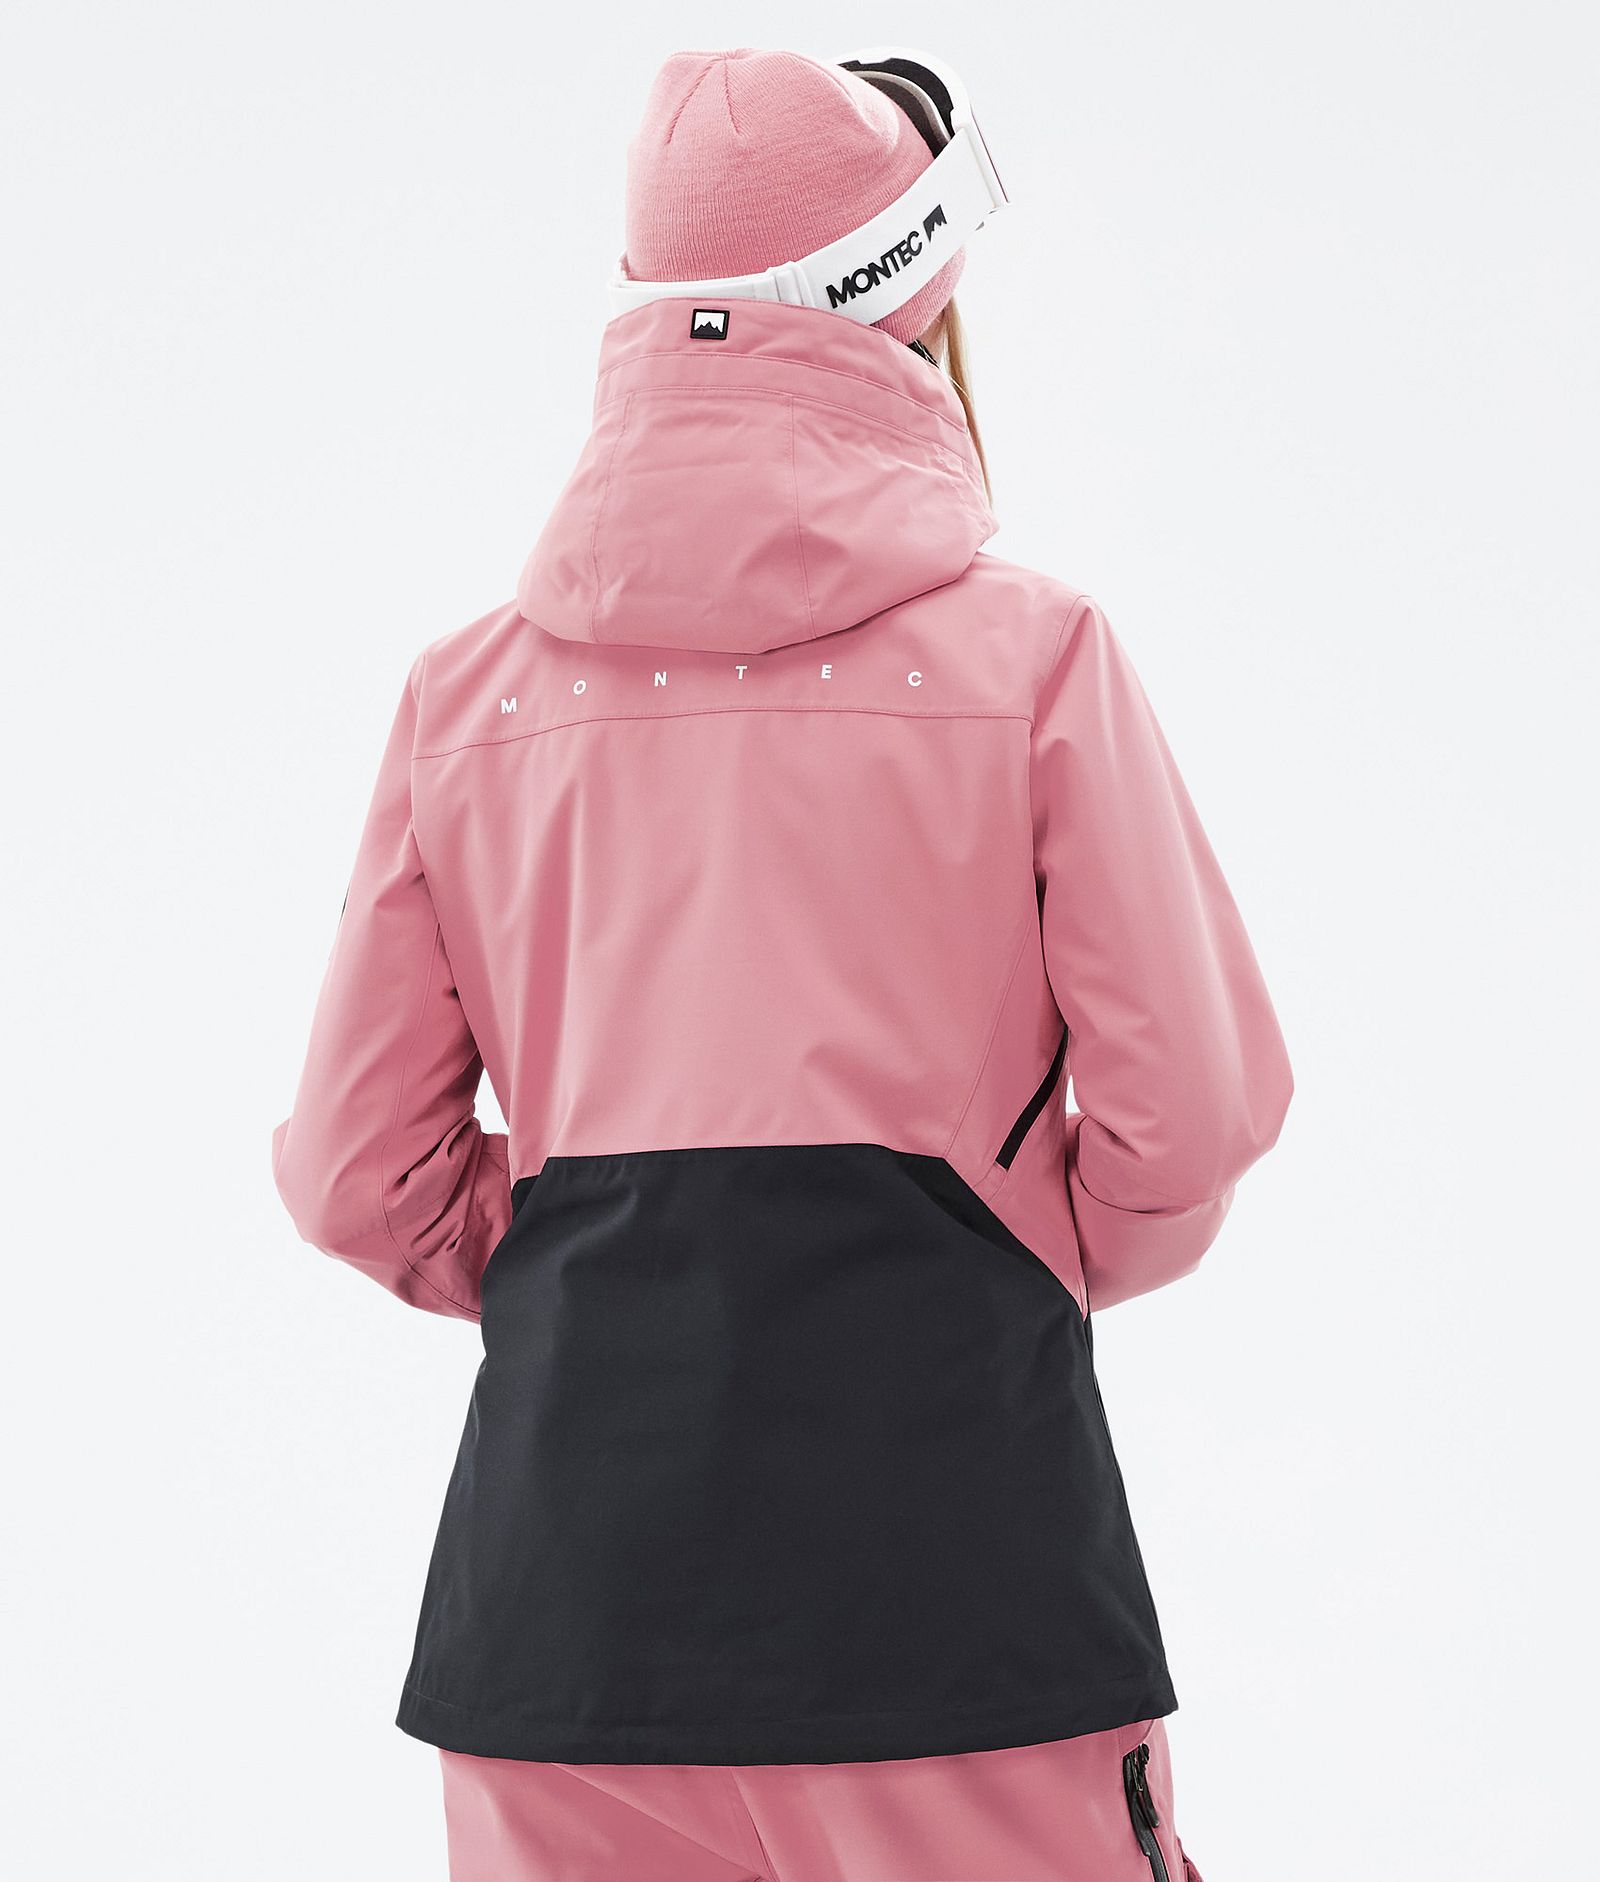 Montec Moss W Ski Jacket Women Pink/Black, Image 7 of 10